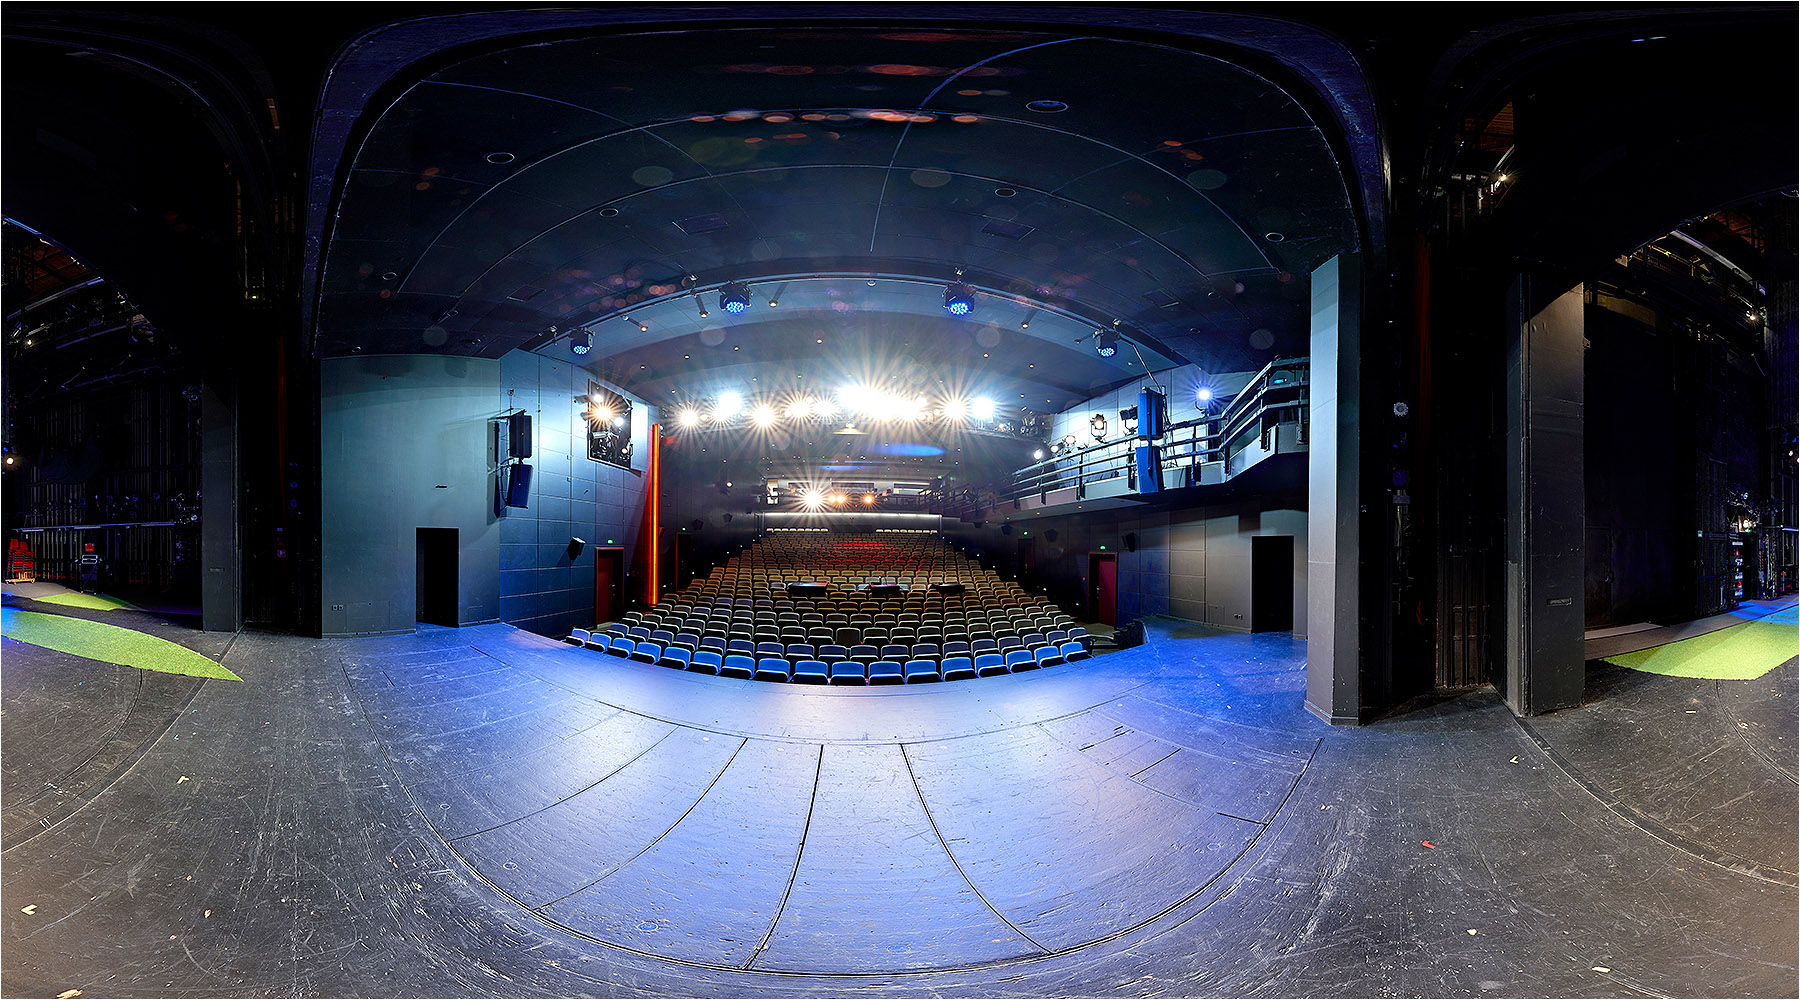  Kugelpanorama von der Bühne in Probensituation des Chemnitzer Schauspielhauses.Copyright by Fotostudio Jörg Riethausen  